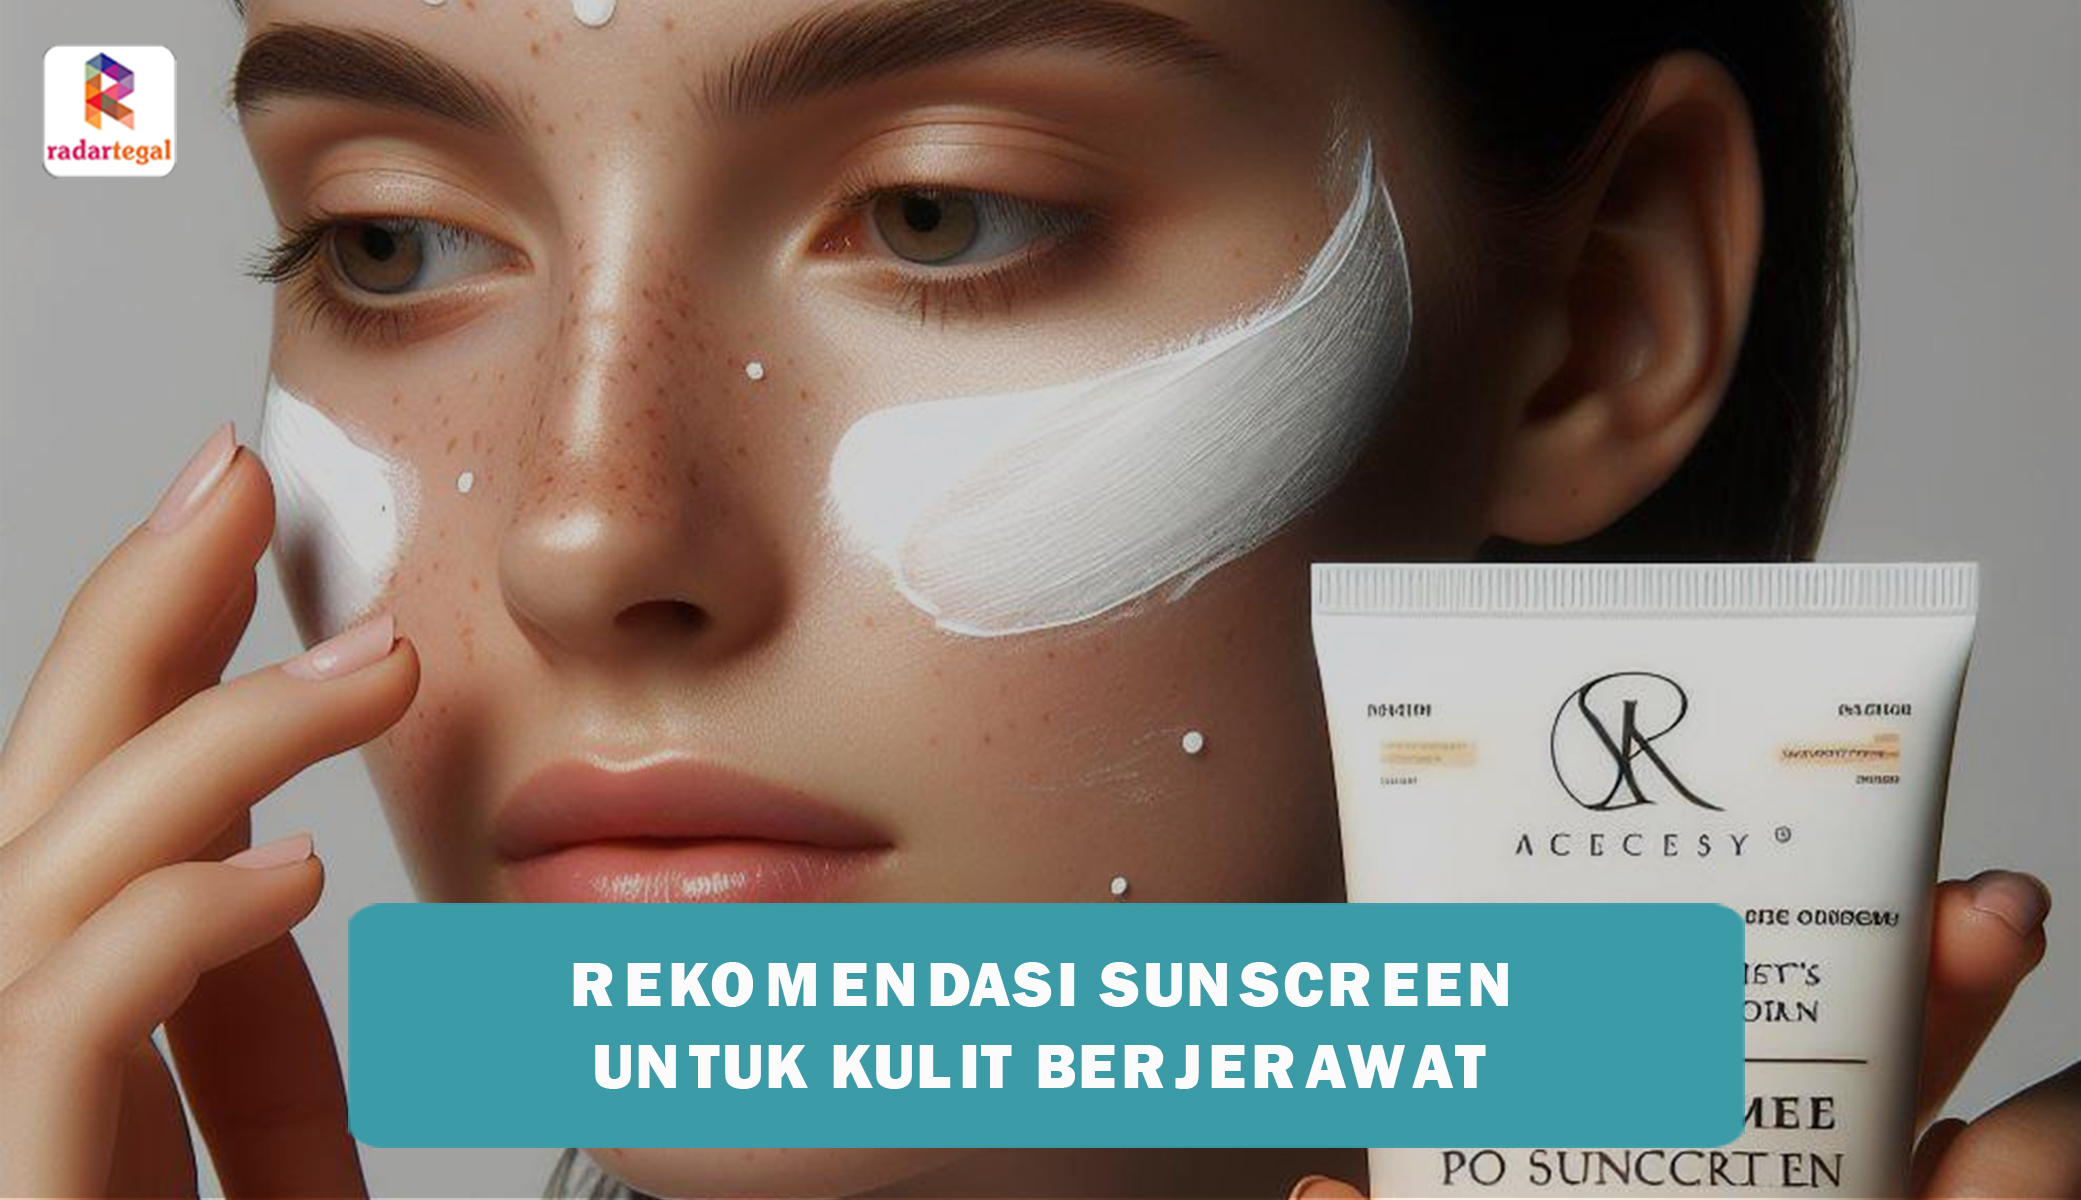 5 Rekomendasi Sunscreen untuk Kulit Berjerawat, Efektif Haluskan Kulit Wajah Tanpa Bekas